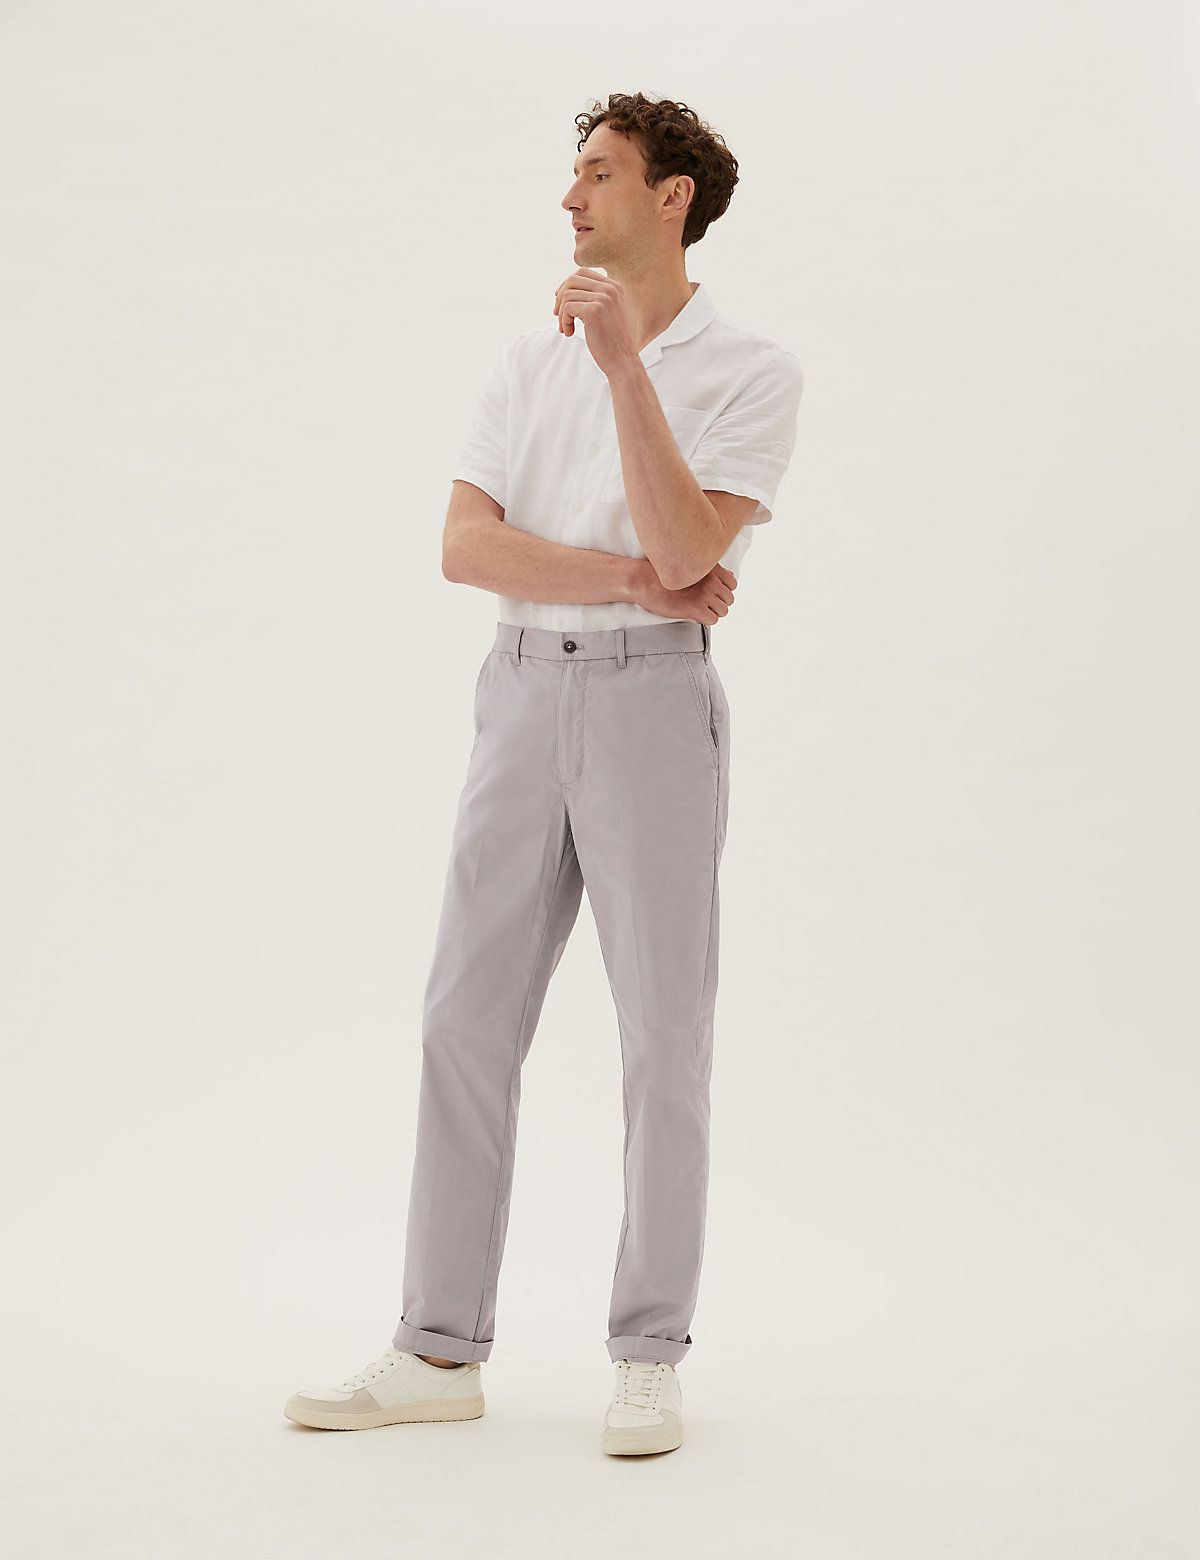 Мужские повседневные брюки Marks & Spencer Легкие хлопковые брюки чинос, Marks&Spencer